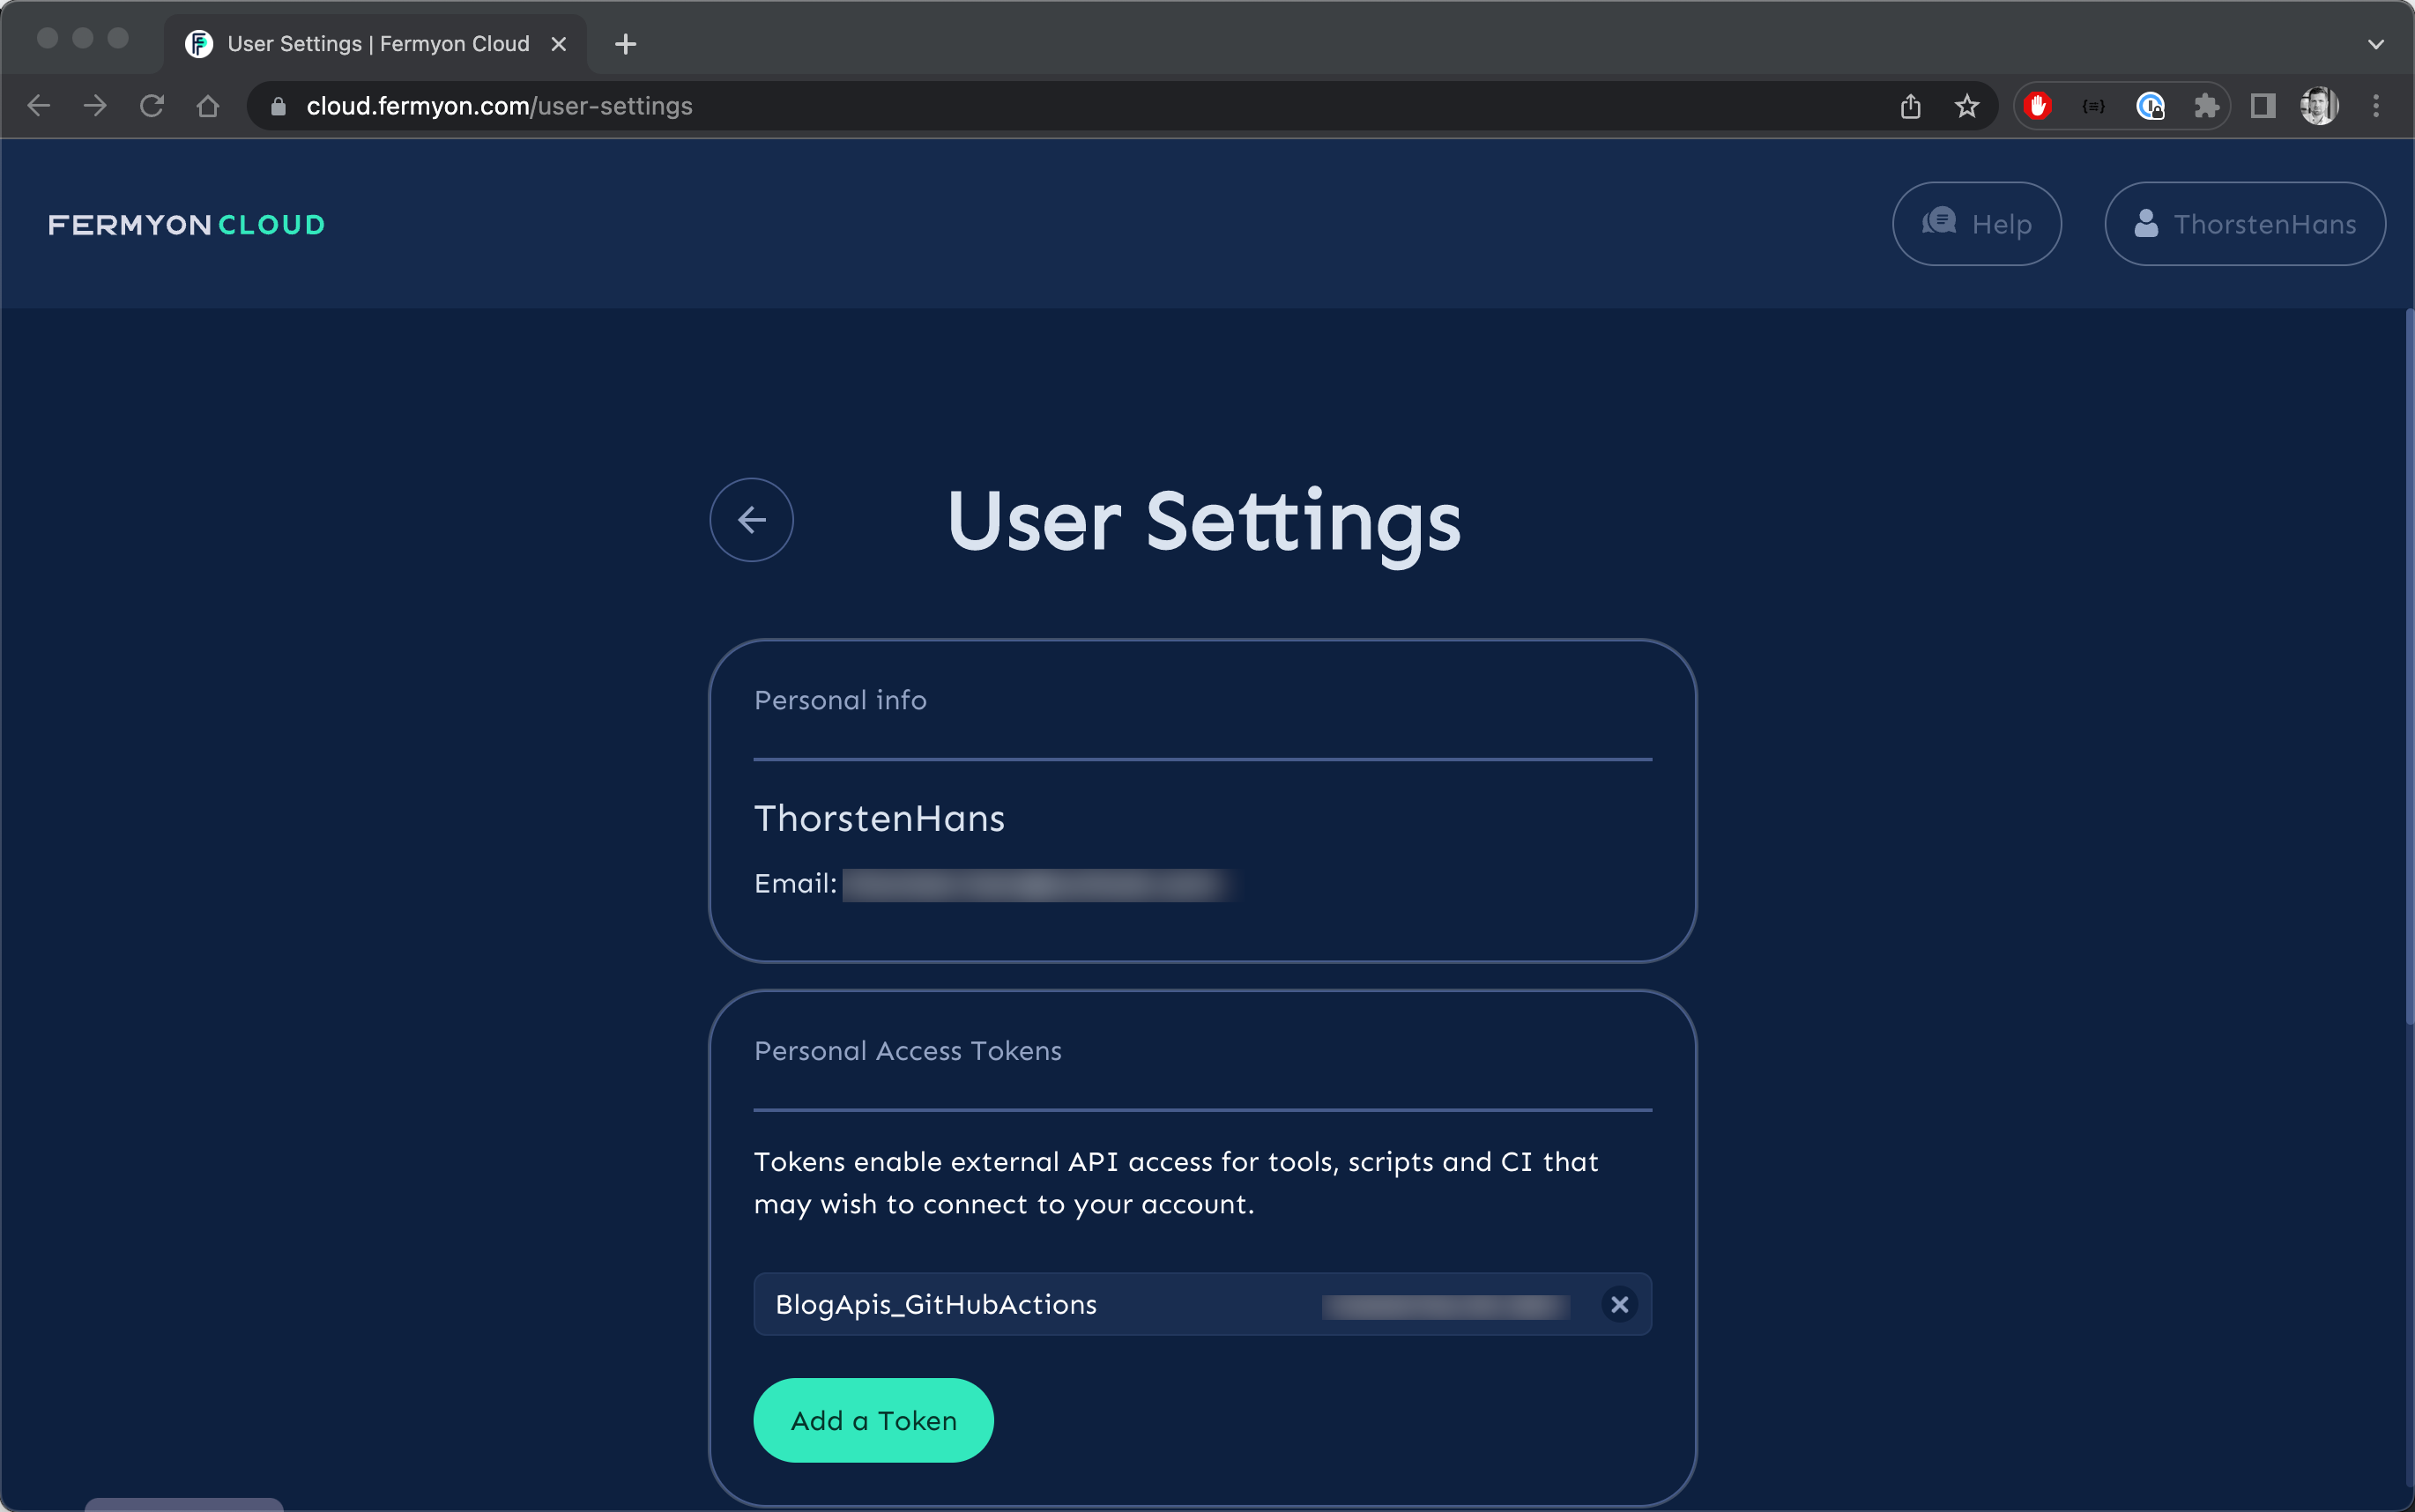 Fermyon Cloud Portal - User Settings